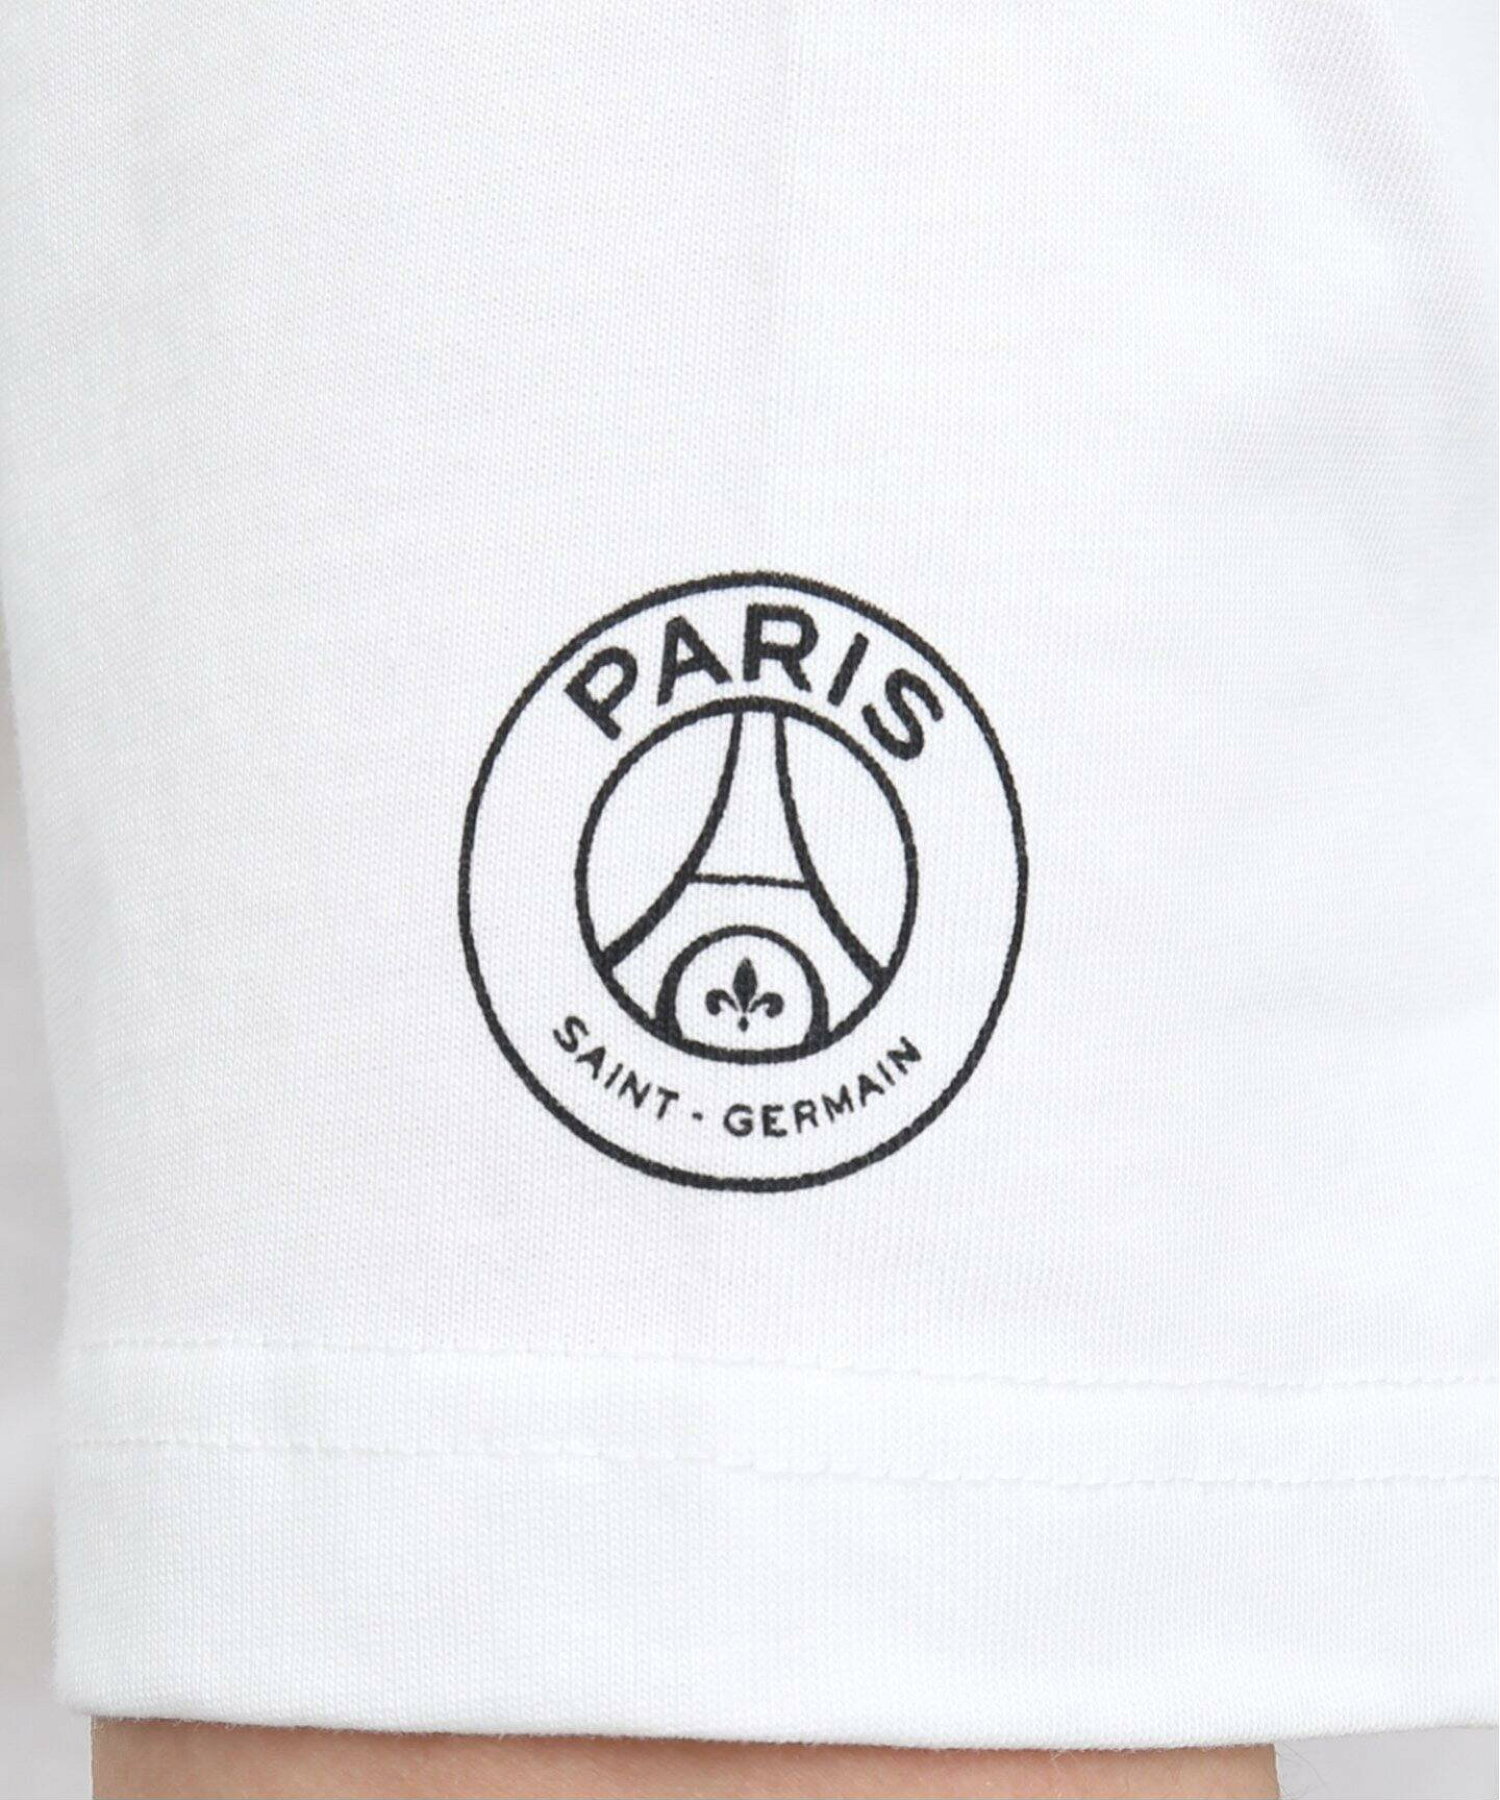 【Paris Saint-Germain】シャドー イニシャルプリント Tシャツ